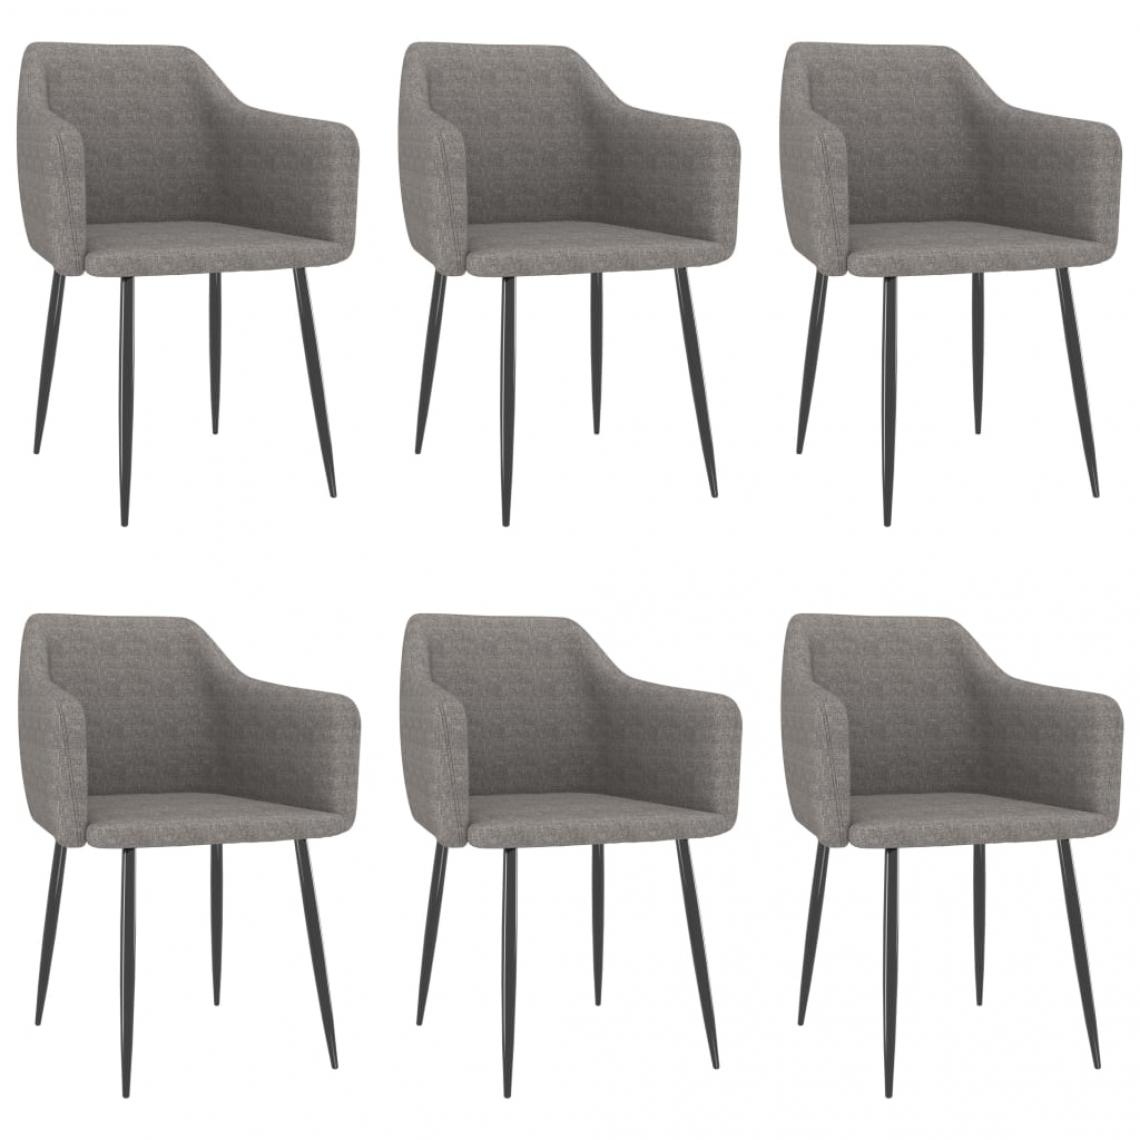 Decoshop26 - Lot de 6 chaises de salle à manger cuisine design moderne tissu gris clair CDS022415 - Chaises